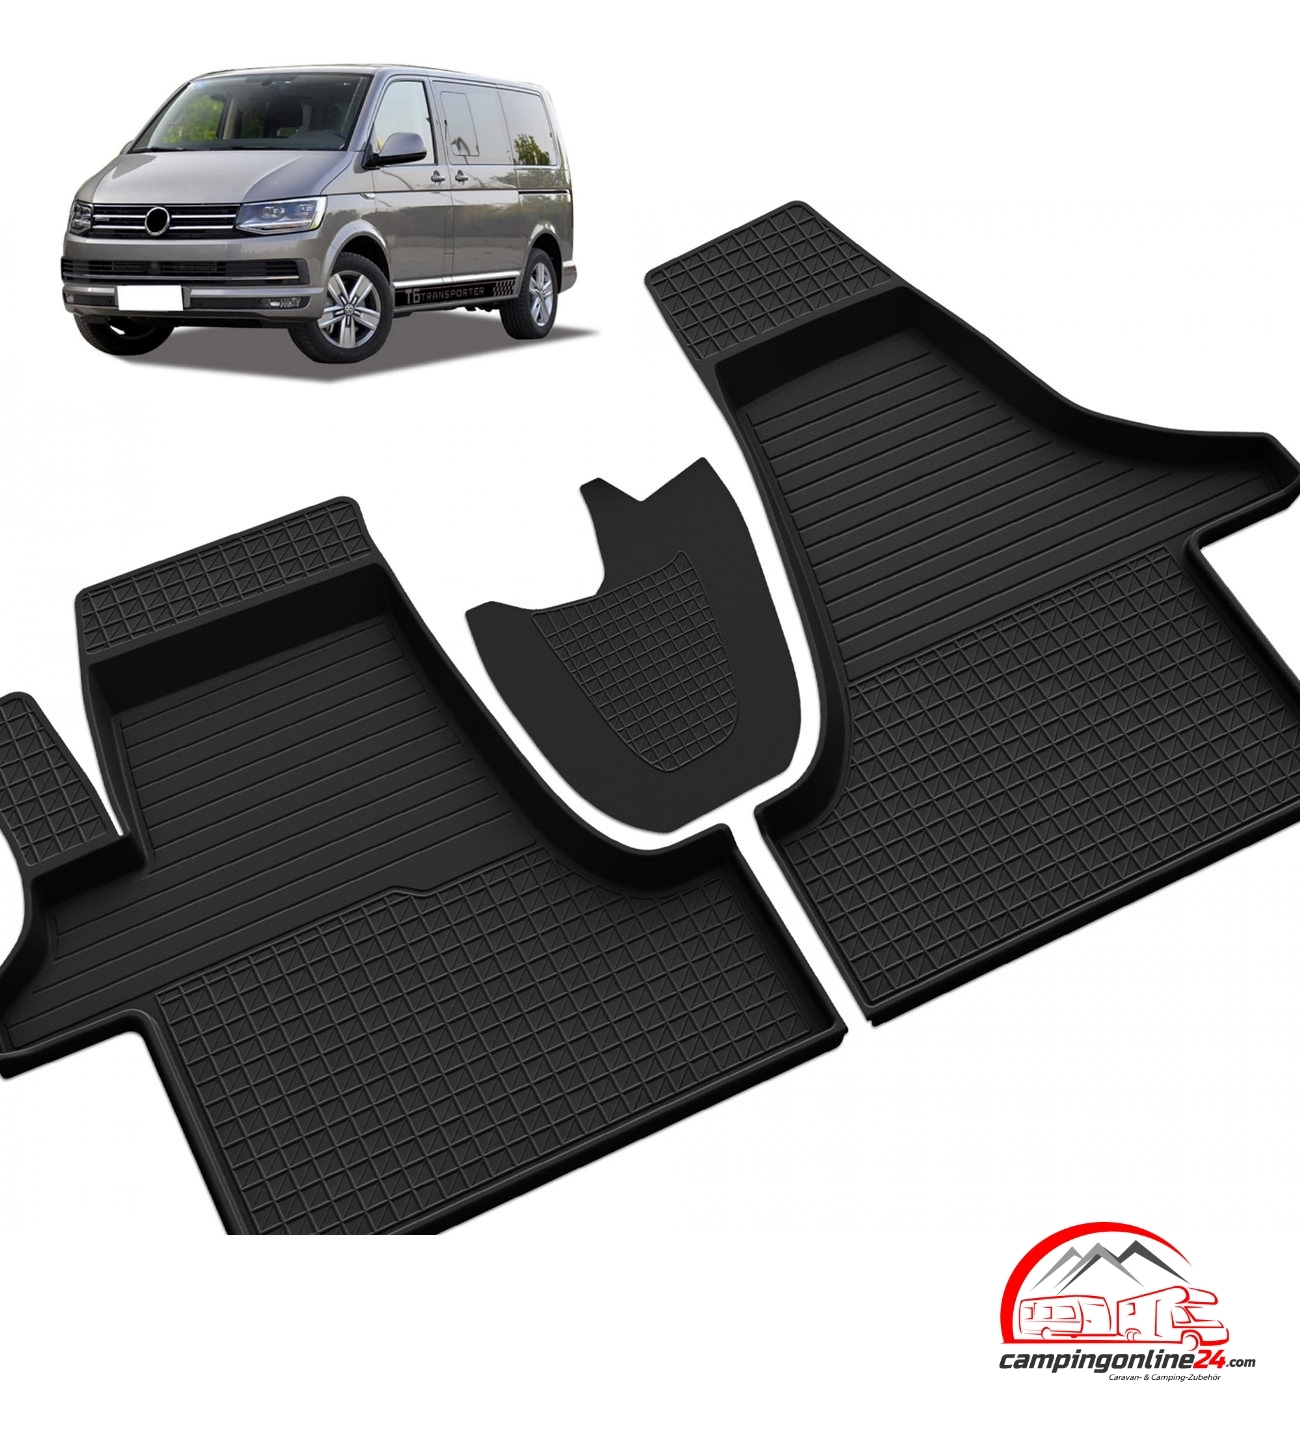 Fußmatten Eintrittstufe für Fahrerhaus und Schiebetür Volkswagen VW T5 / T6  Modell Astra